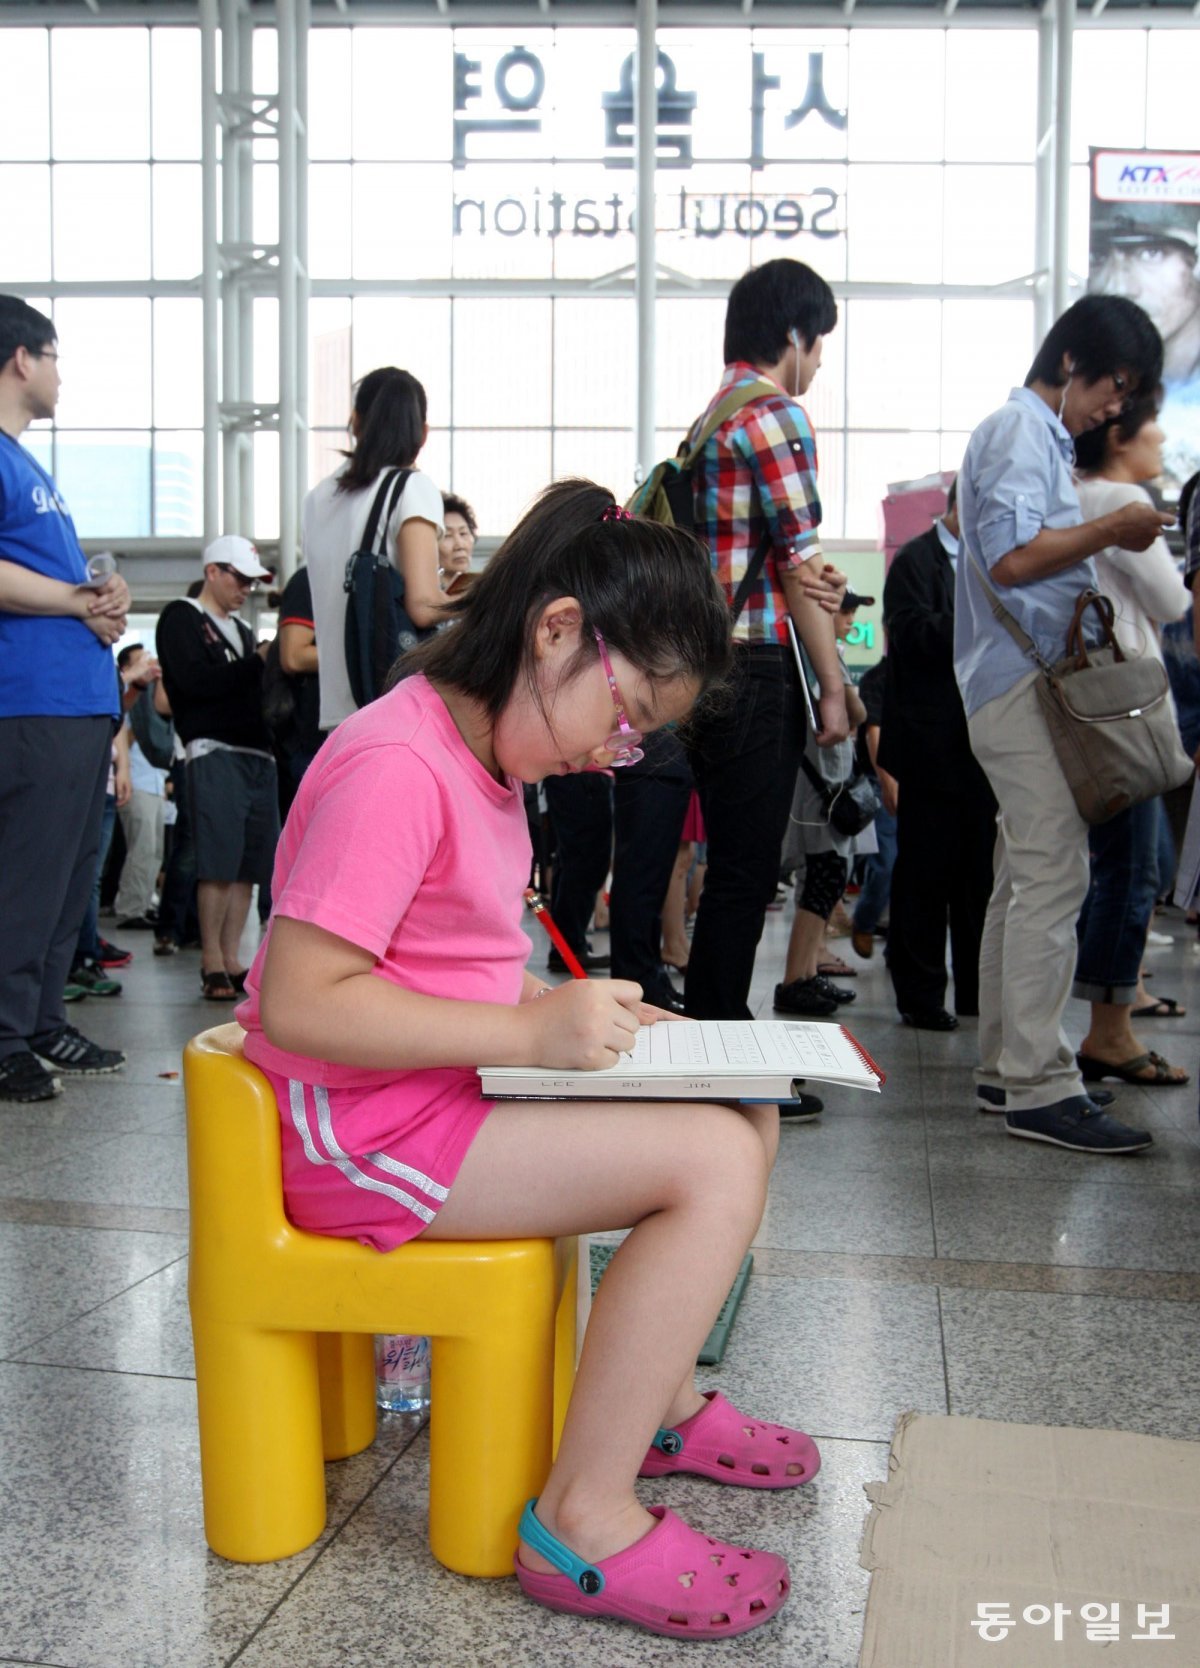 2011년 8월 10일 부모를 따라온 한 어린이가 의자까지 가지고 와서 공부에 열중하고 있다. 장승윤 기자 tomato99@donga.com